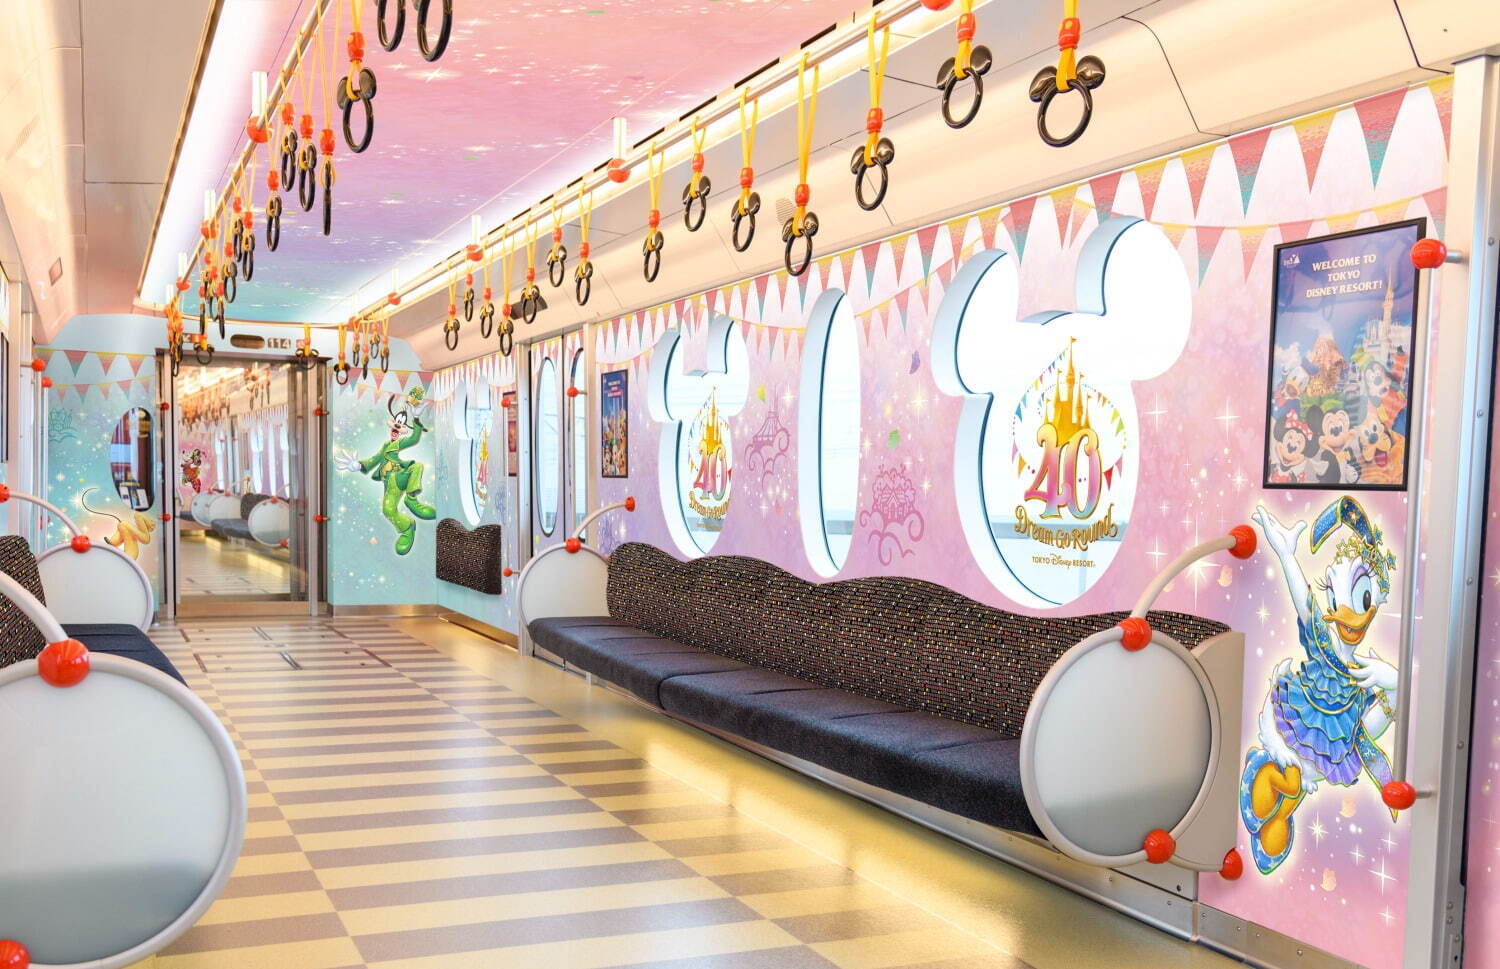 東京ディズニーリゾートに40周年記念ラッピングモノレールが運行、限定